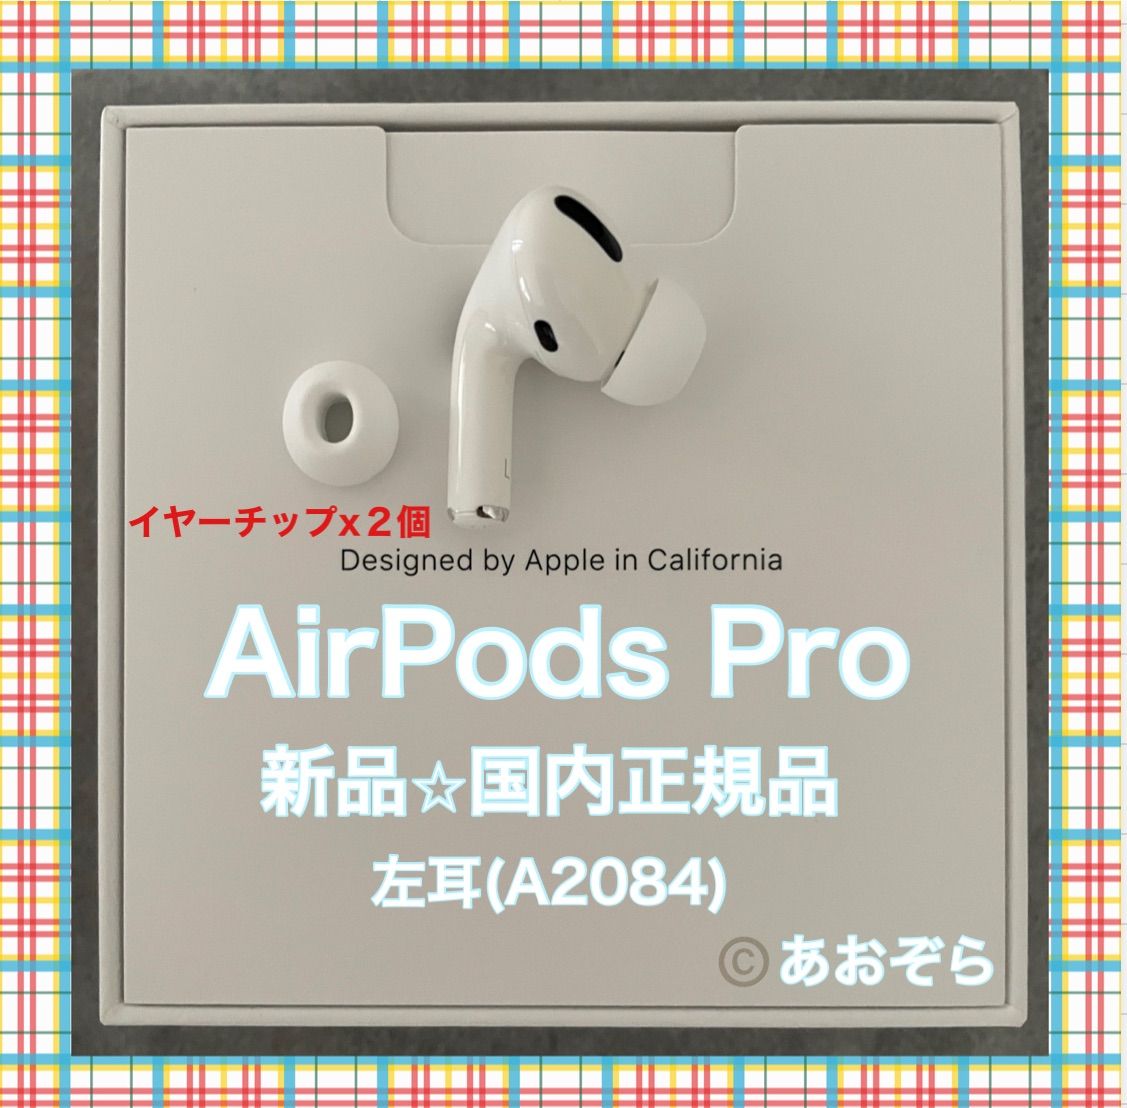 正規品 AirPods pro エアーポッズプロ 左耳 A2084